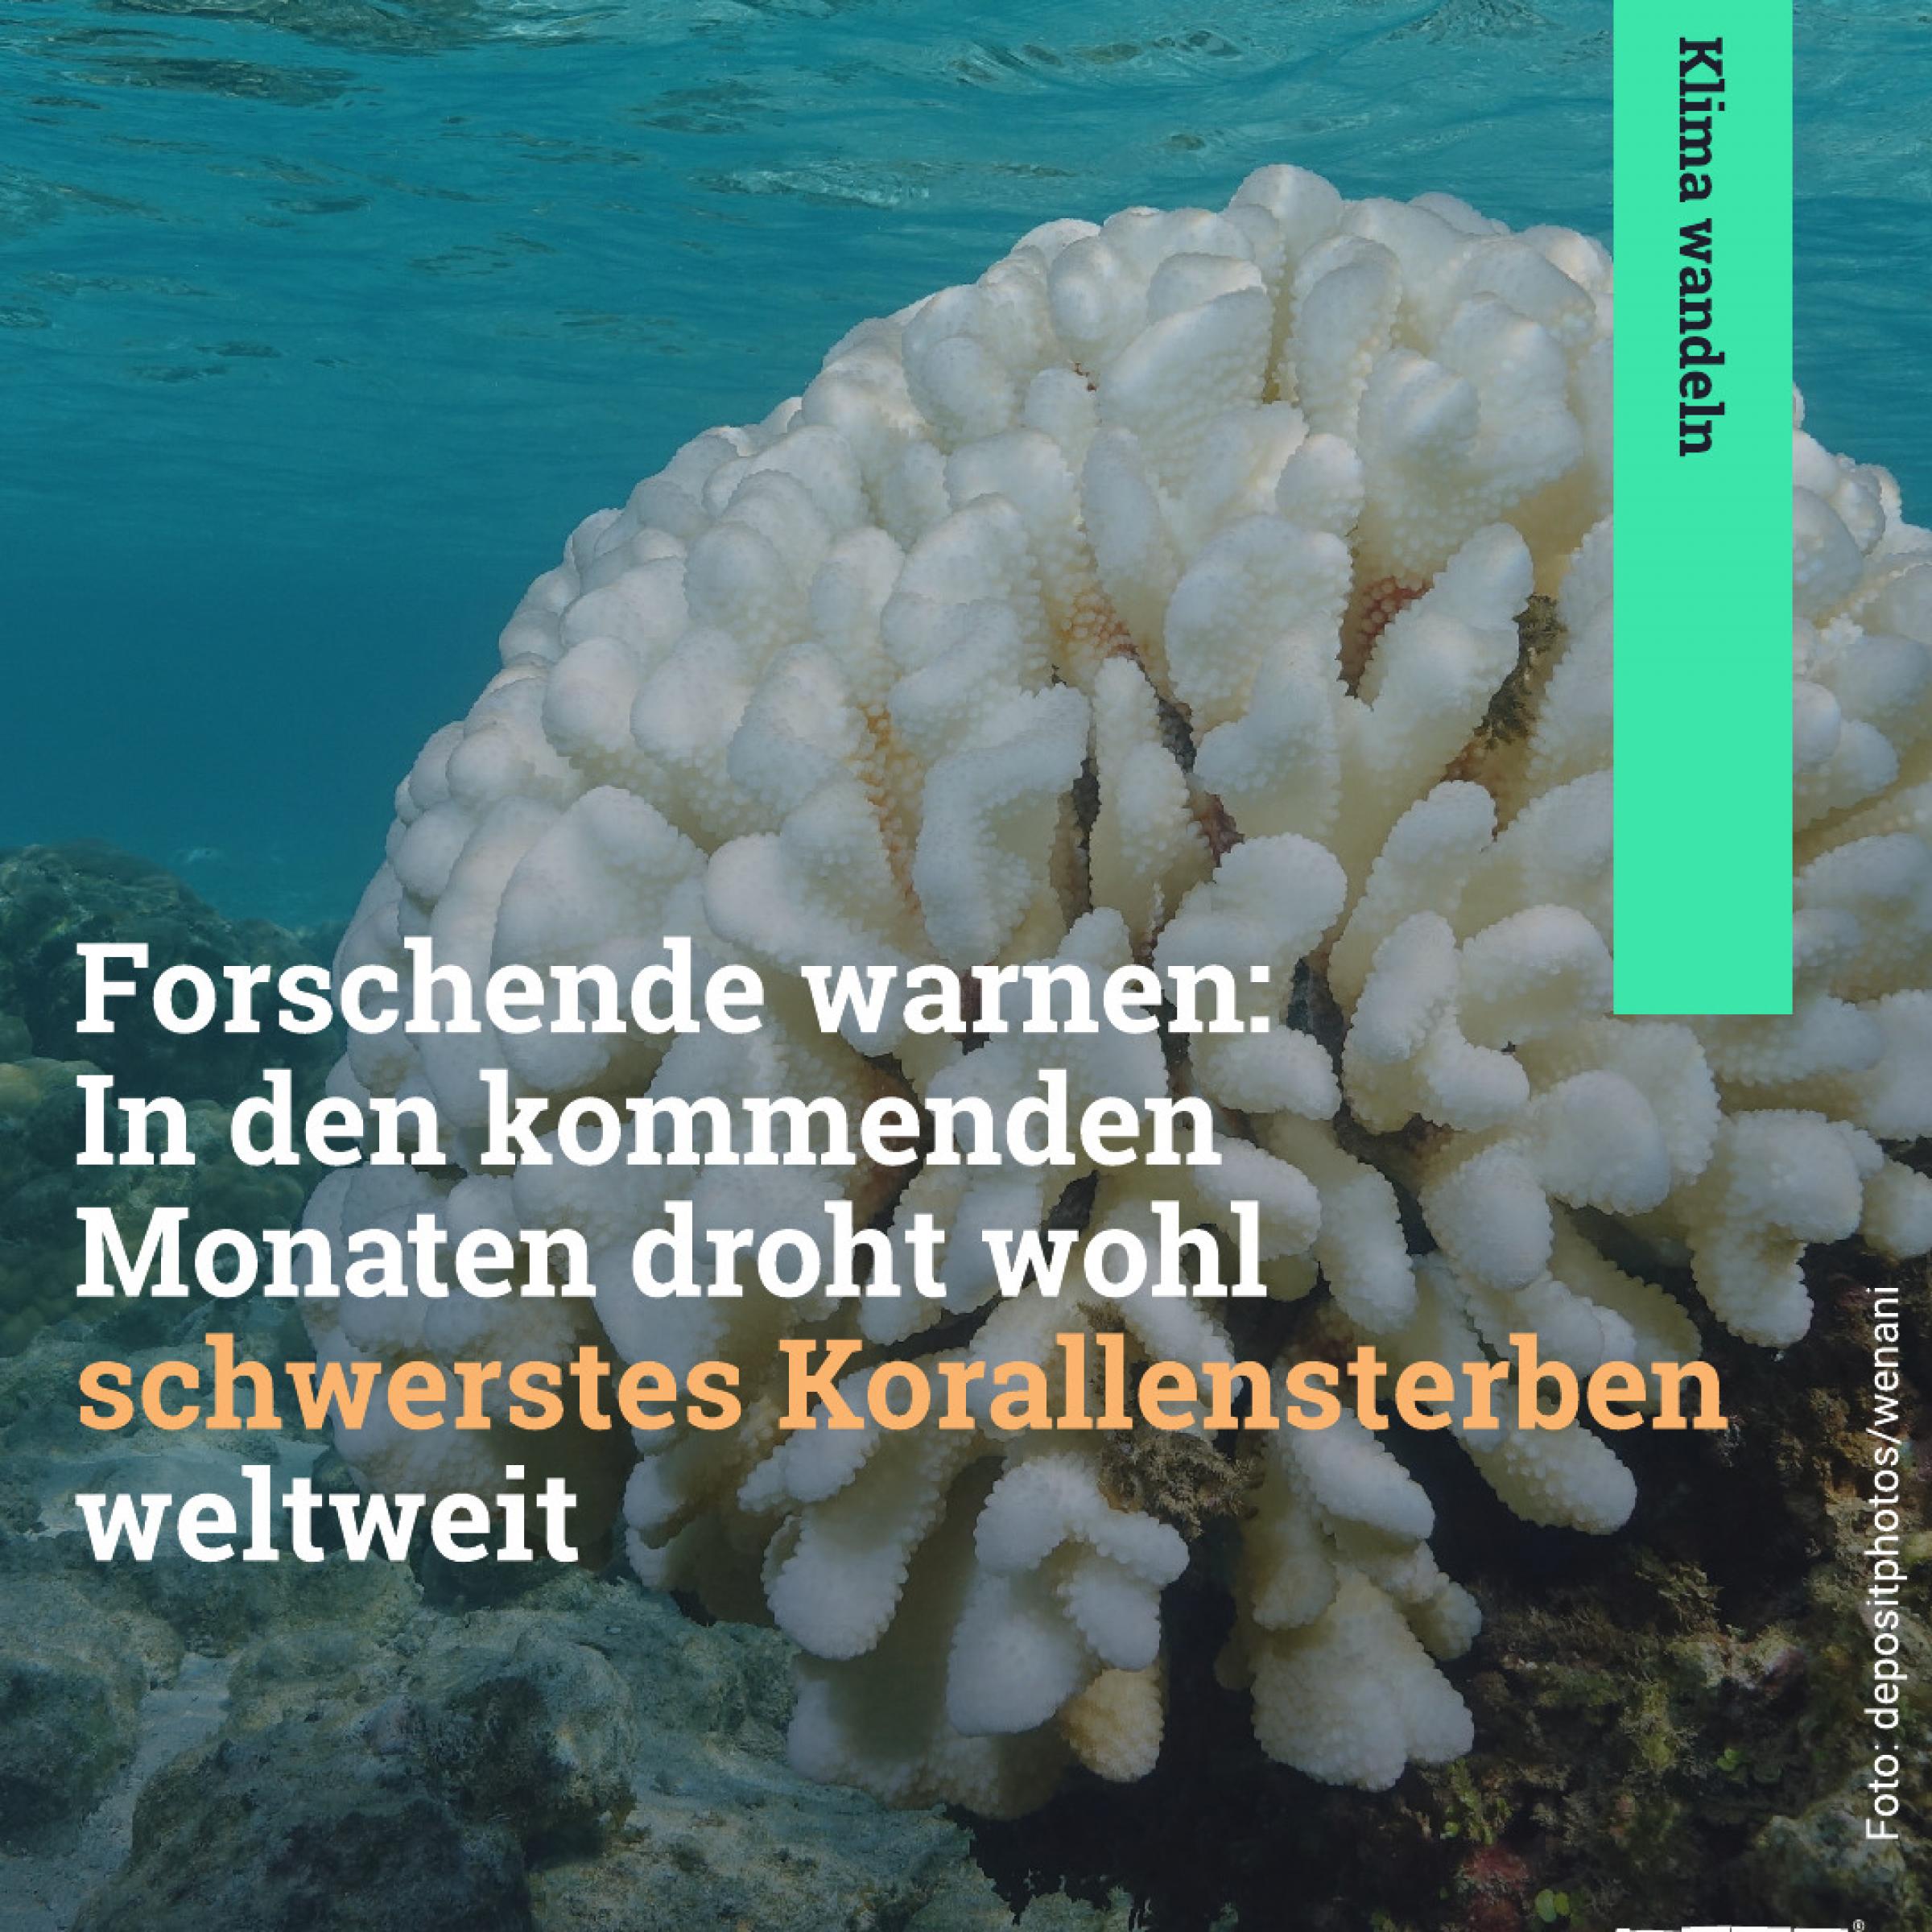 Forschende warnen: In den kommenden Monaten droht wohl schwerstes Korallensterben weltweit.